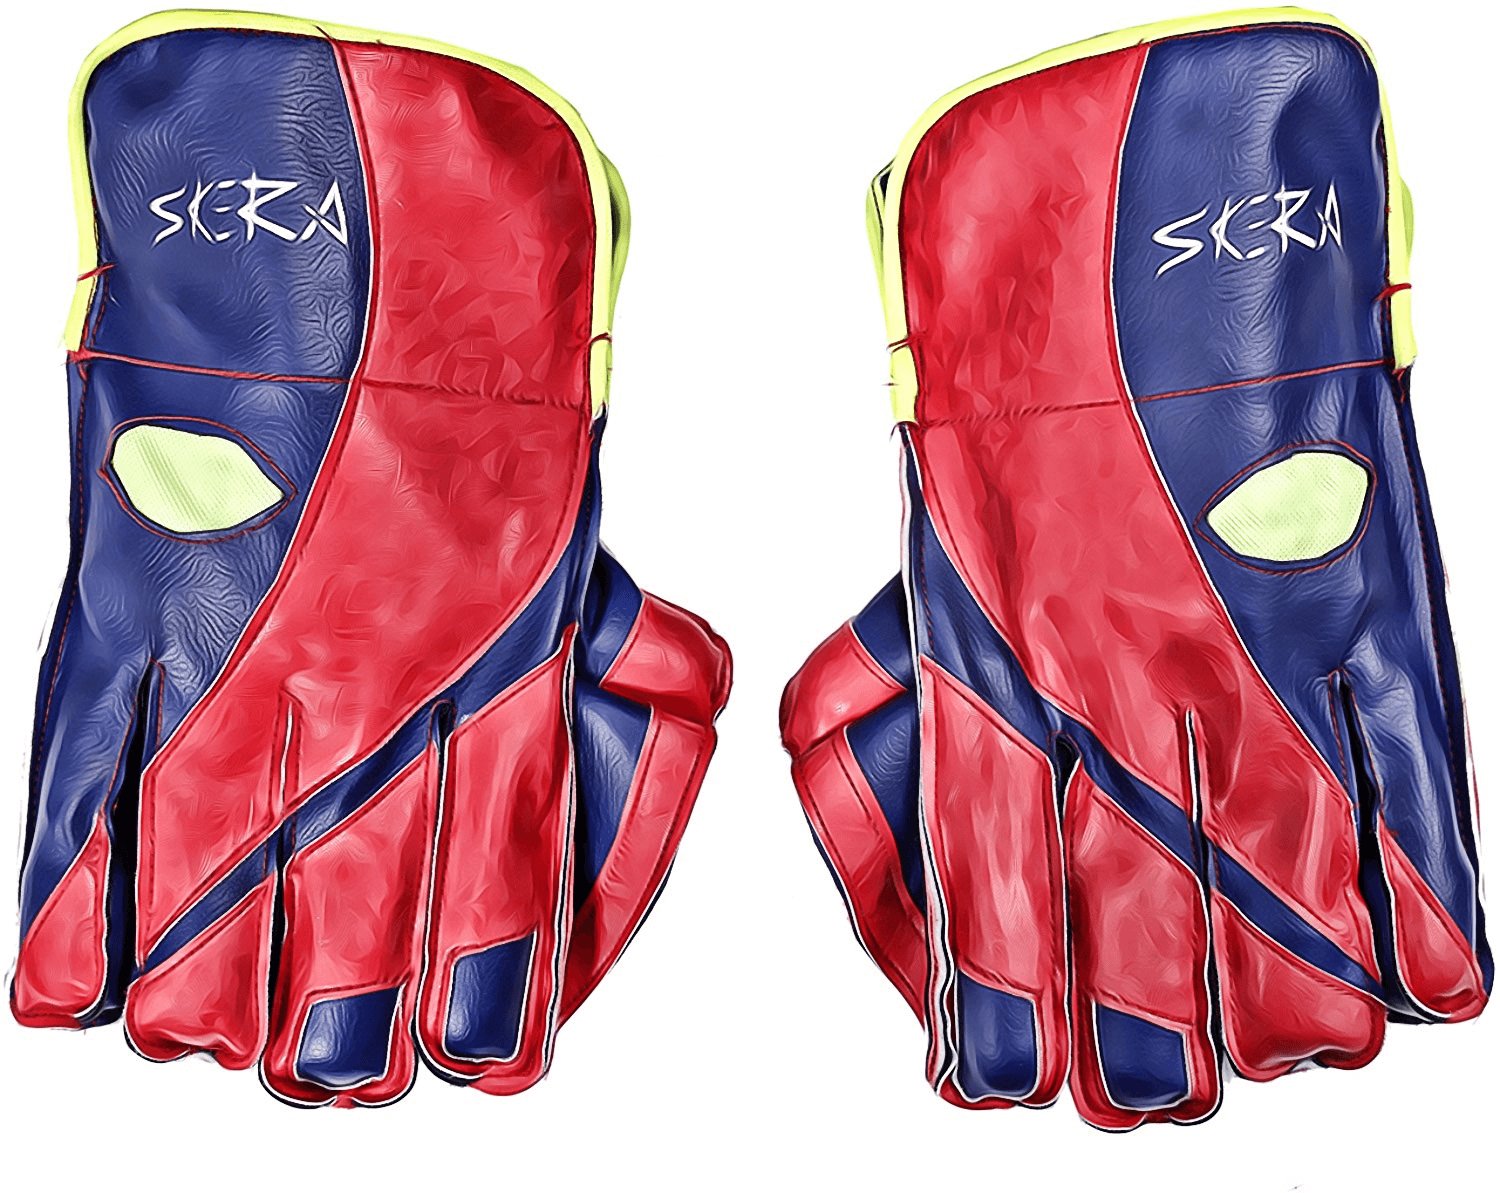 Skera E3136815 Rookie Wicket Keeper Gloves